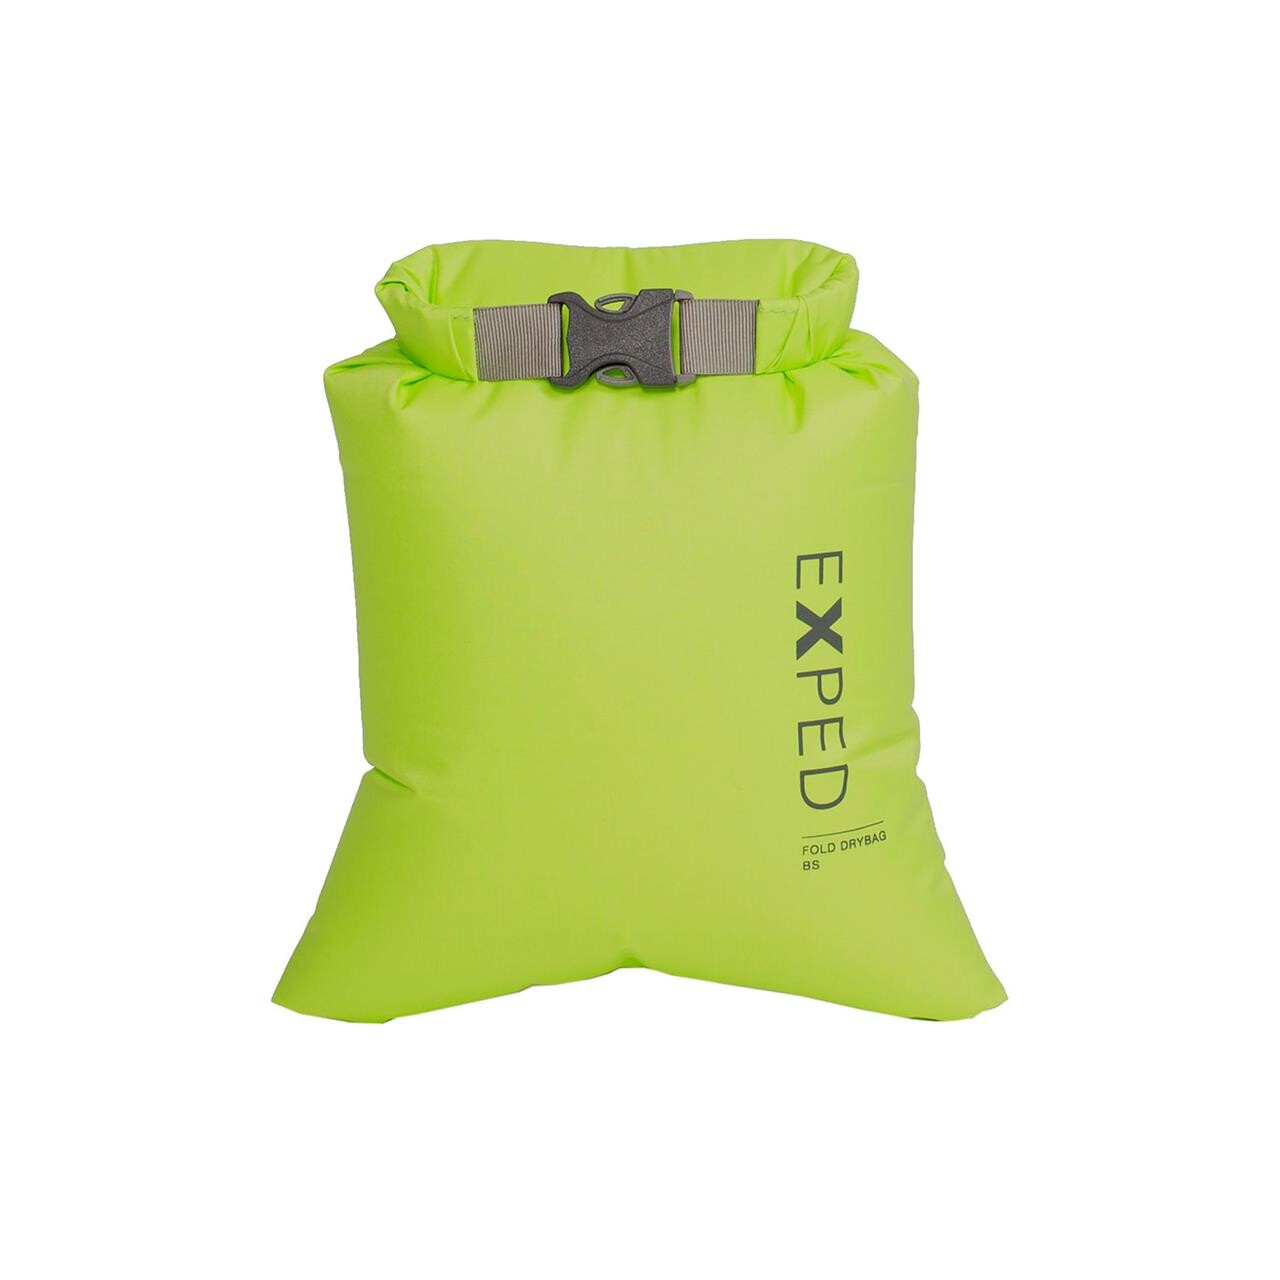 Billede af Exped Fold Drybag BS XXS (Grøn (LIME))